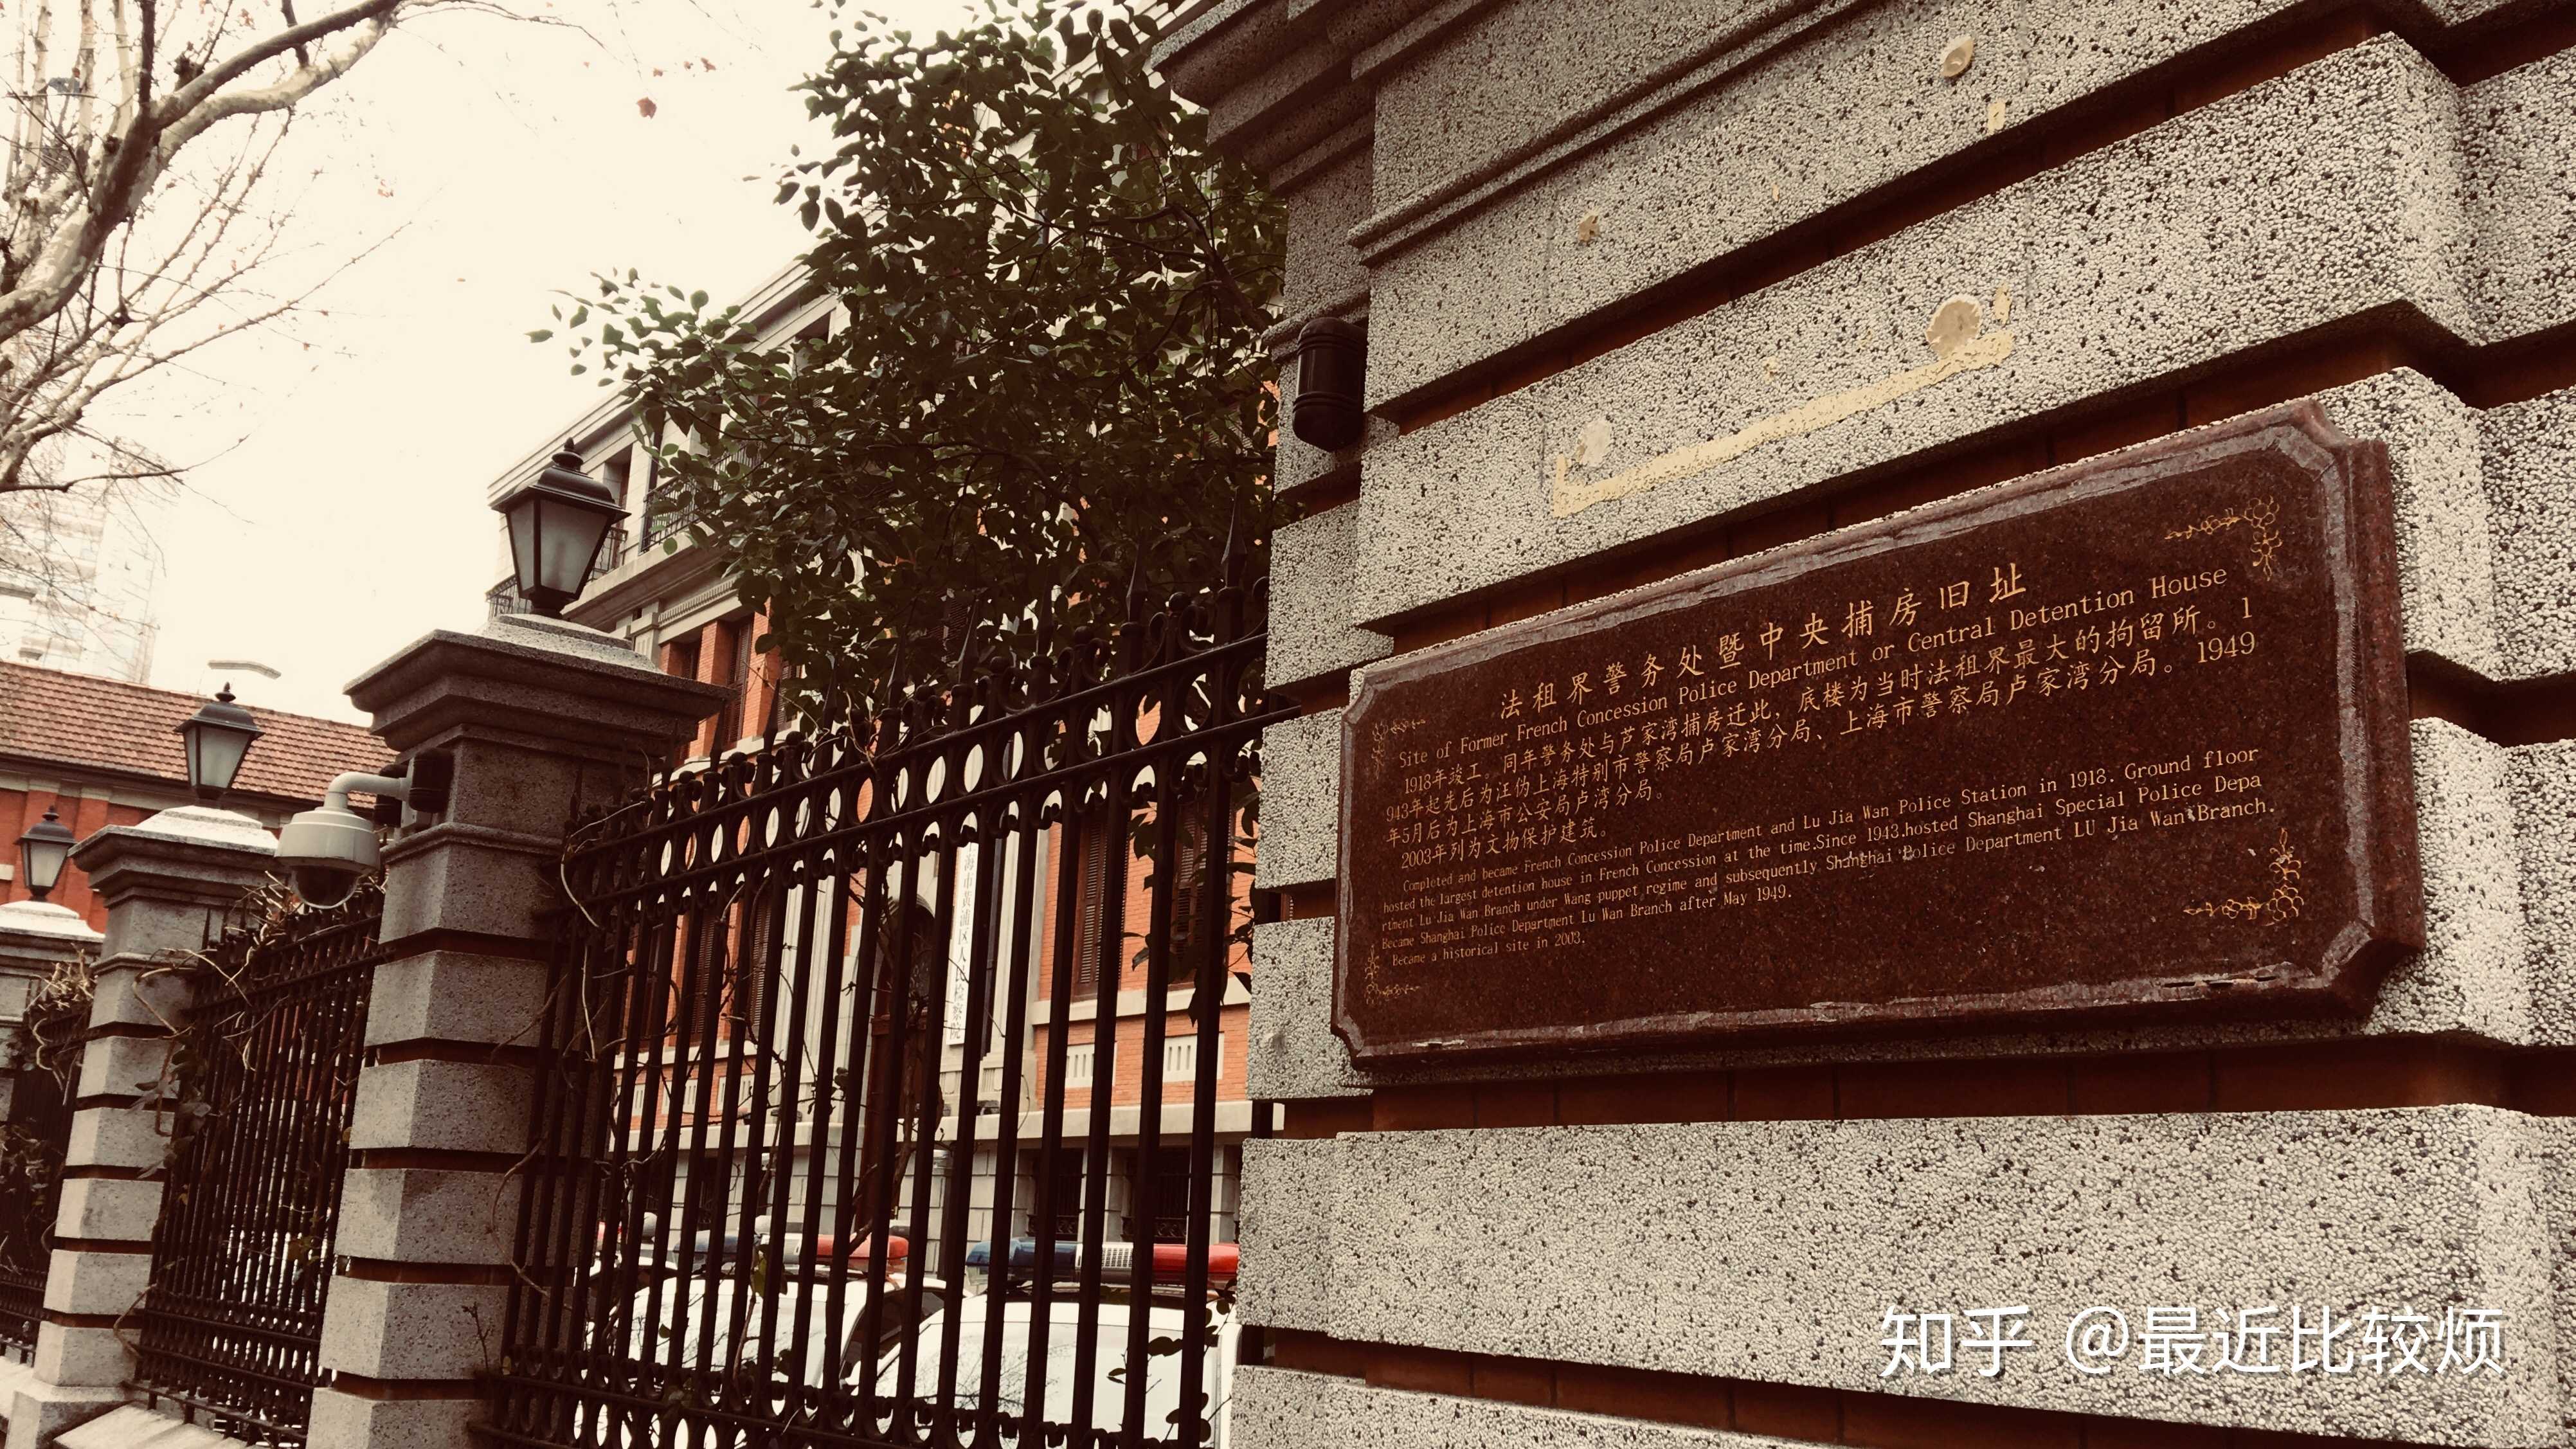 上海公共租界巡捕房图片